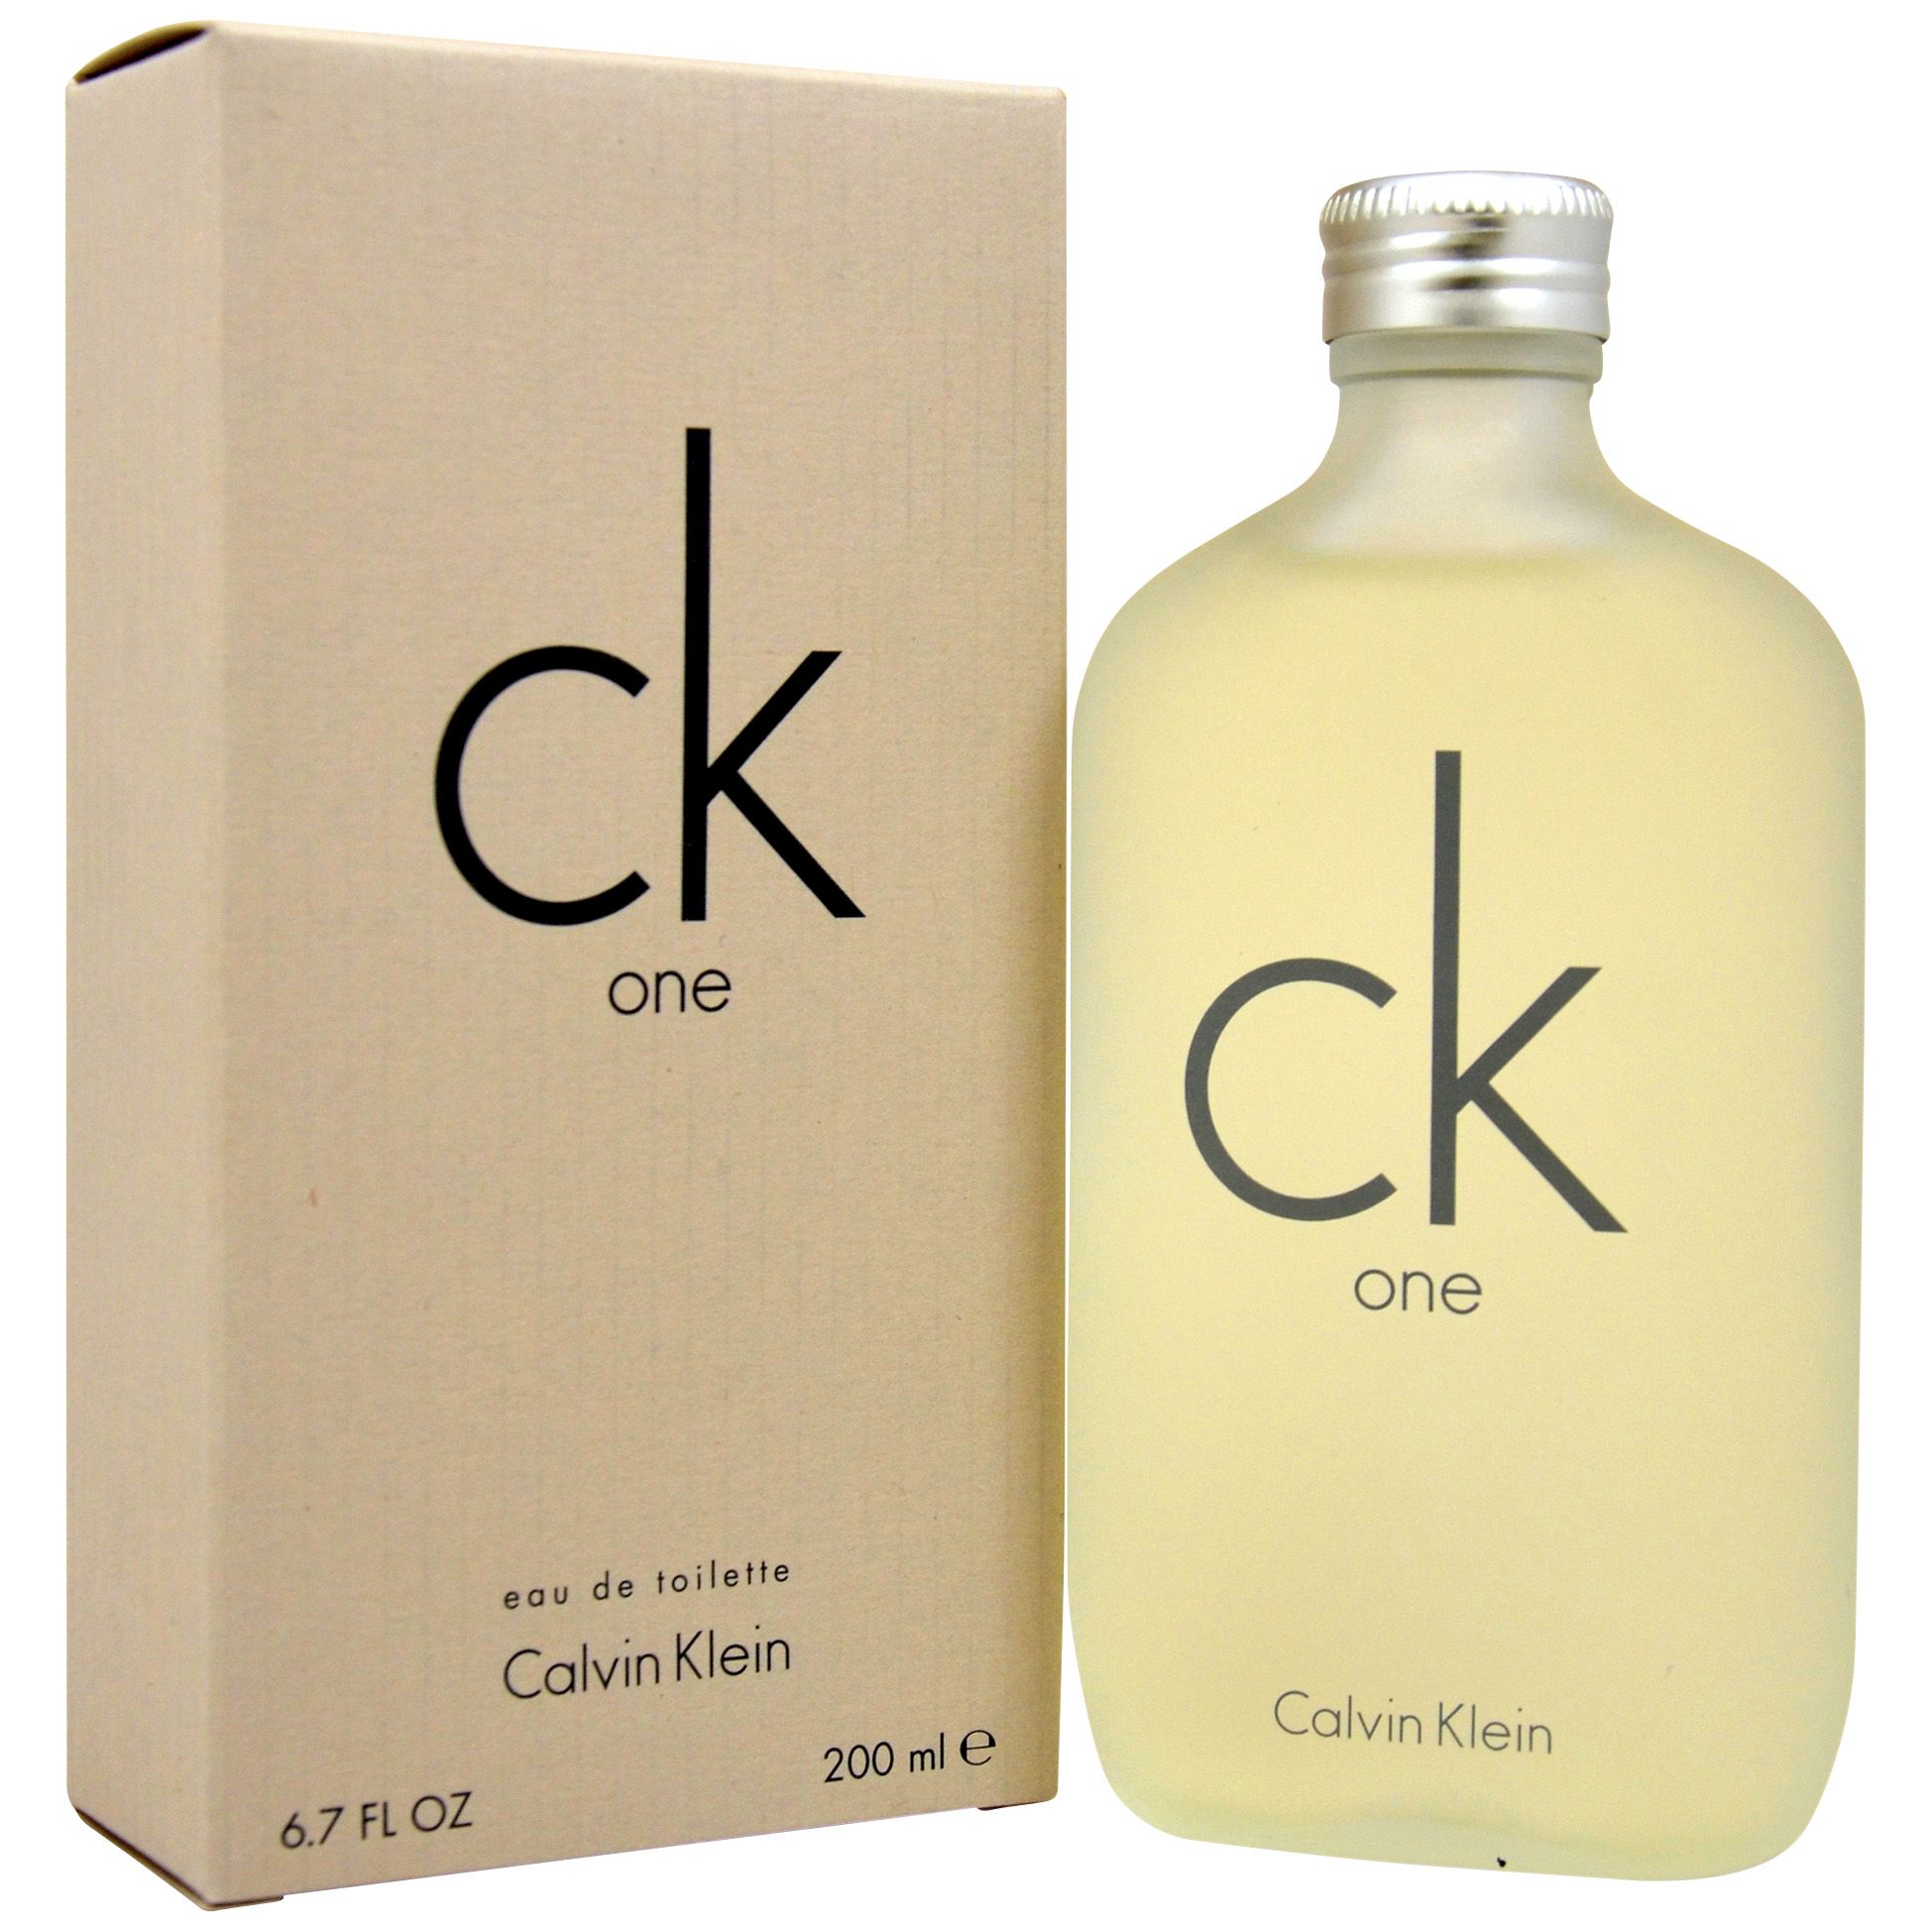 Calvin Klein CK Men's Be Eau de Toilette Spray - 6.7 fl oz bottle